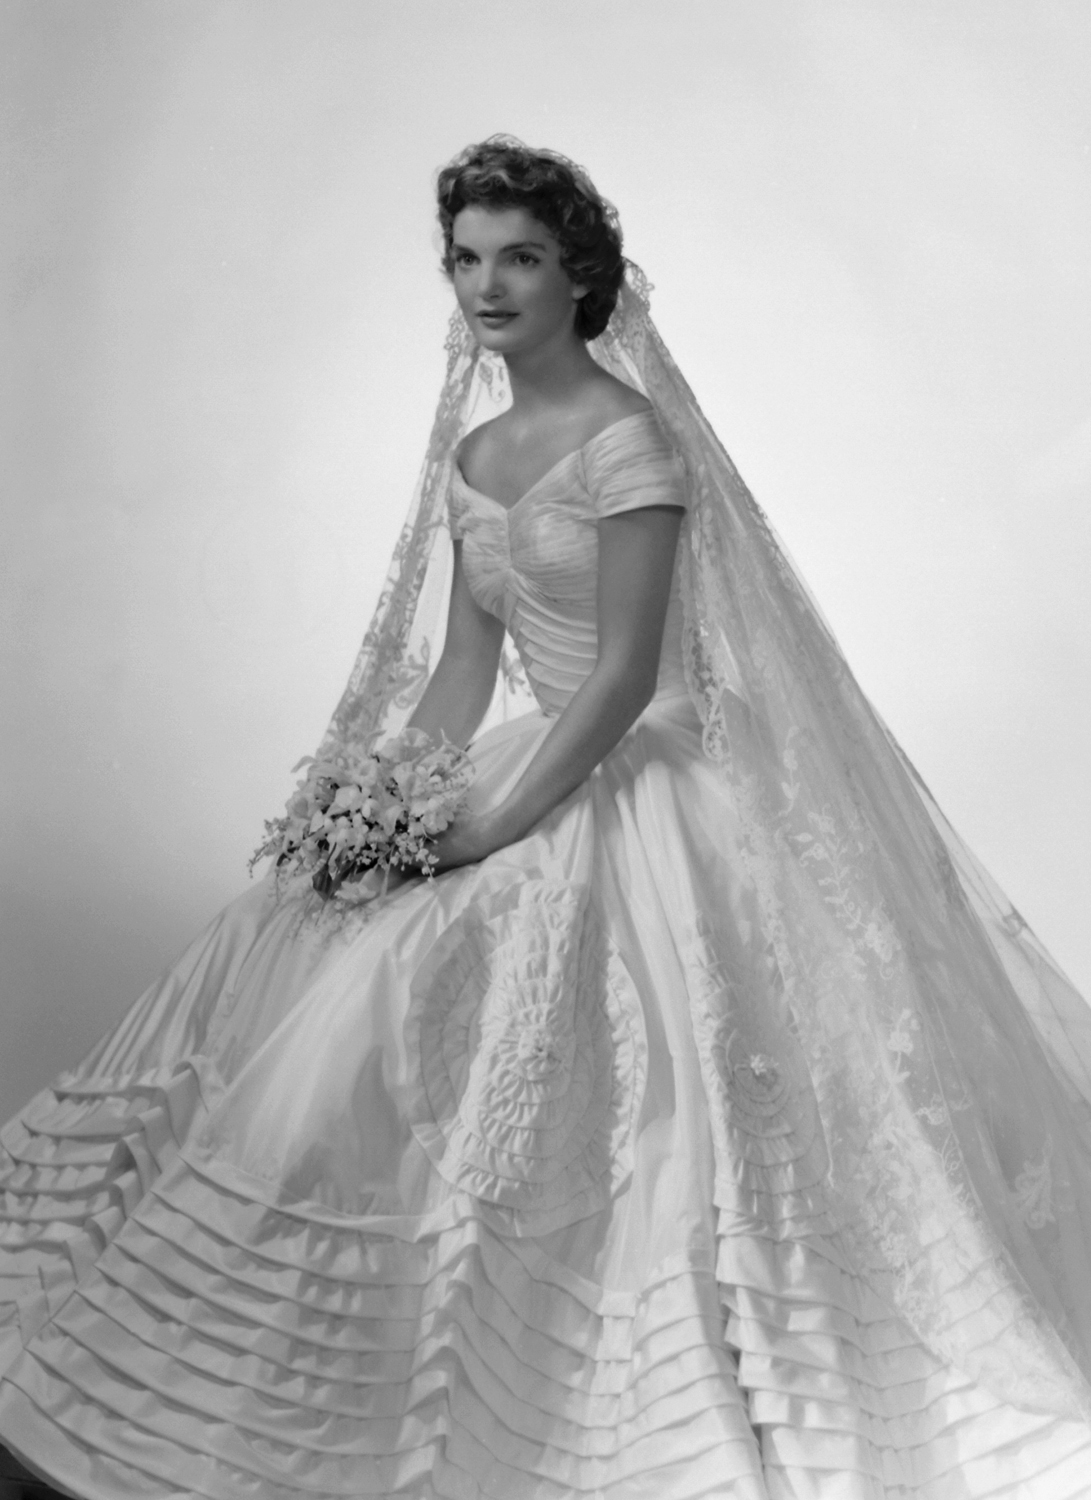 Vintage Clothing Love: Vintage Wedding Dress Time